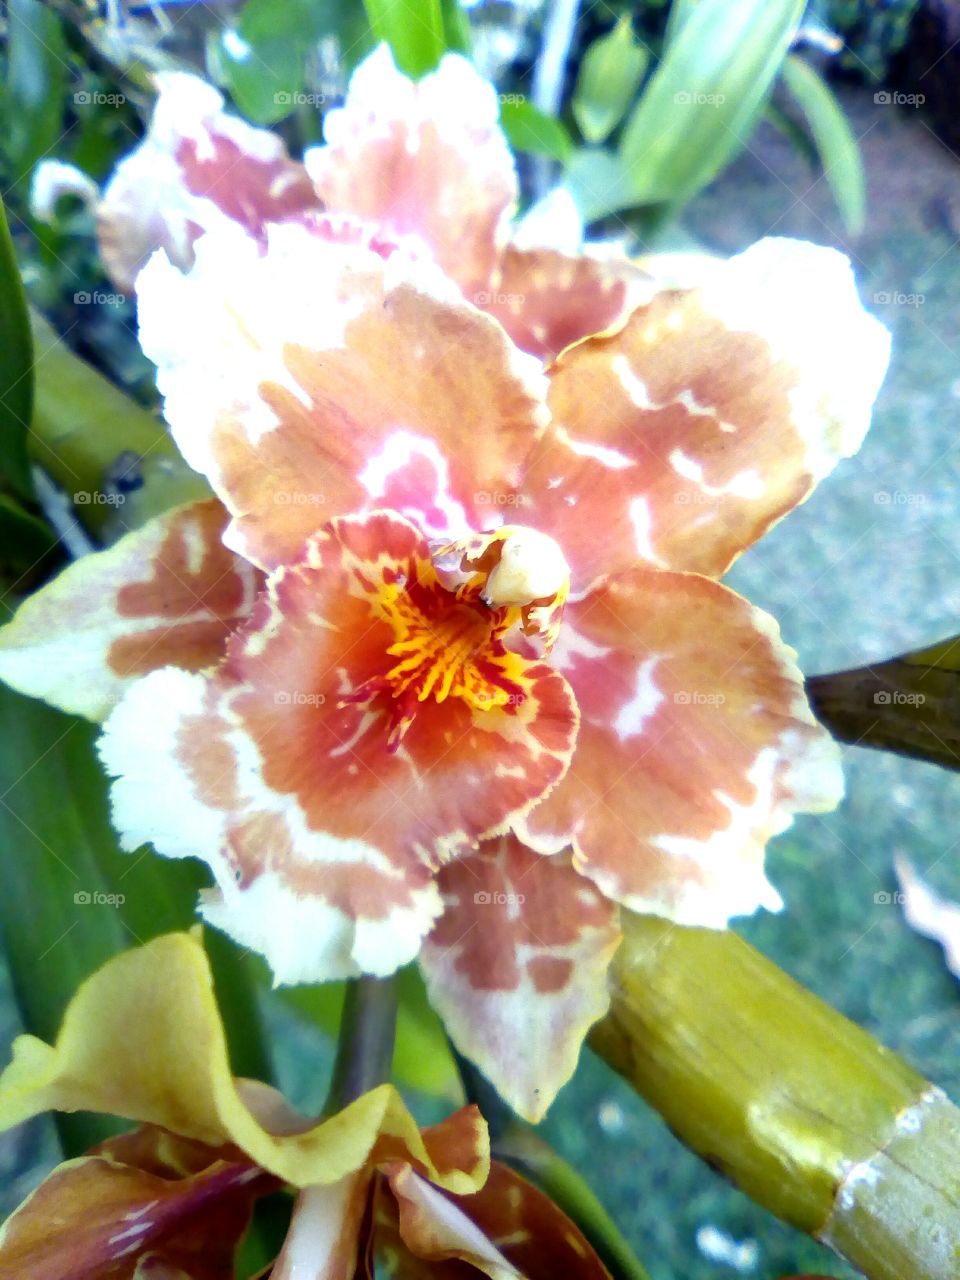 Apaixonada por orquídeas!